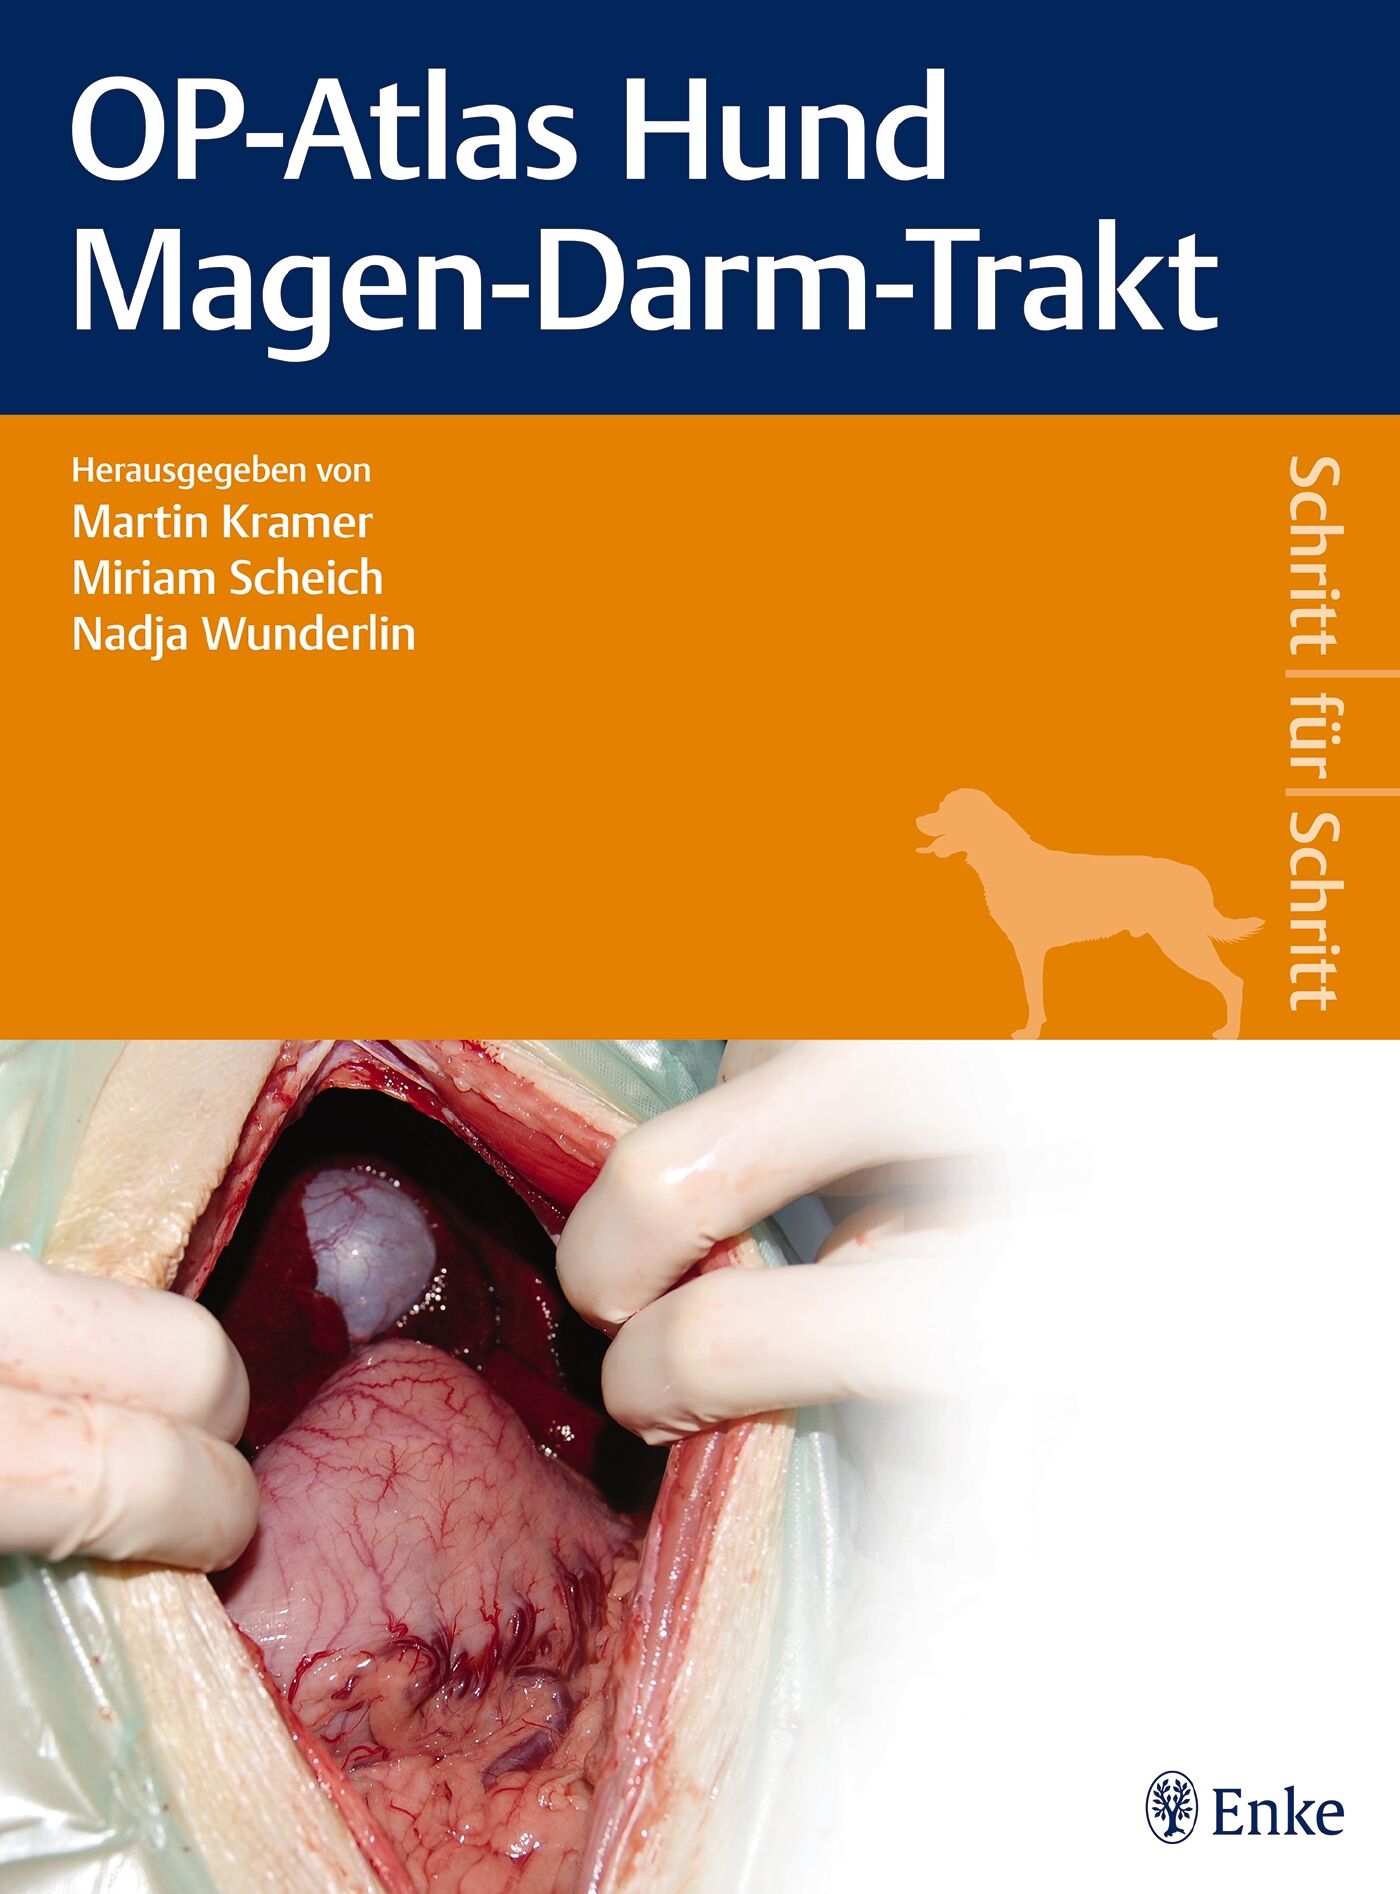 OP-Atlas Hund Magen-Darm-Trakt, 9783132400399